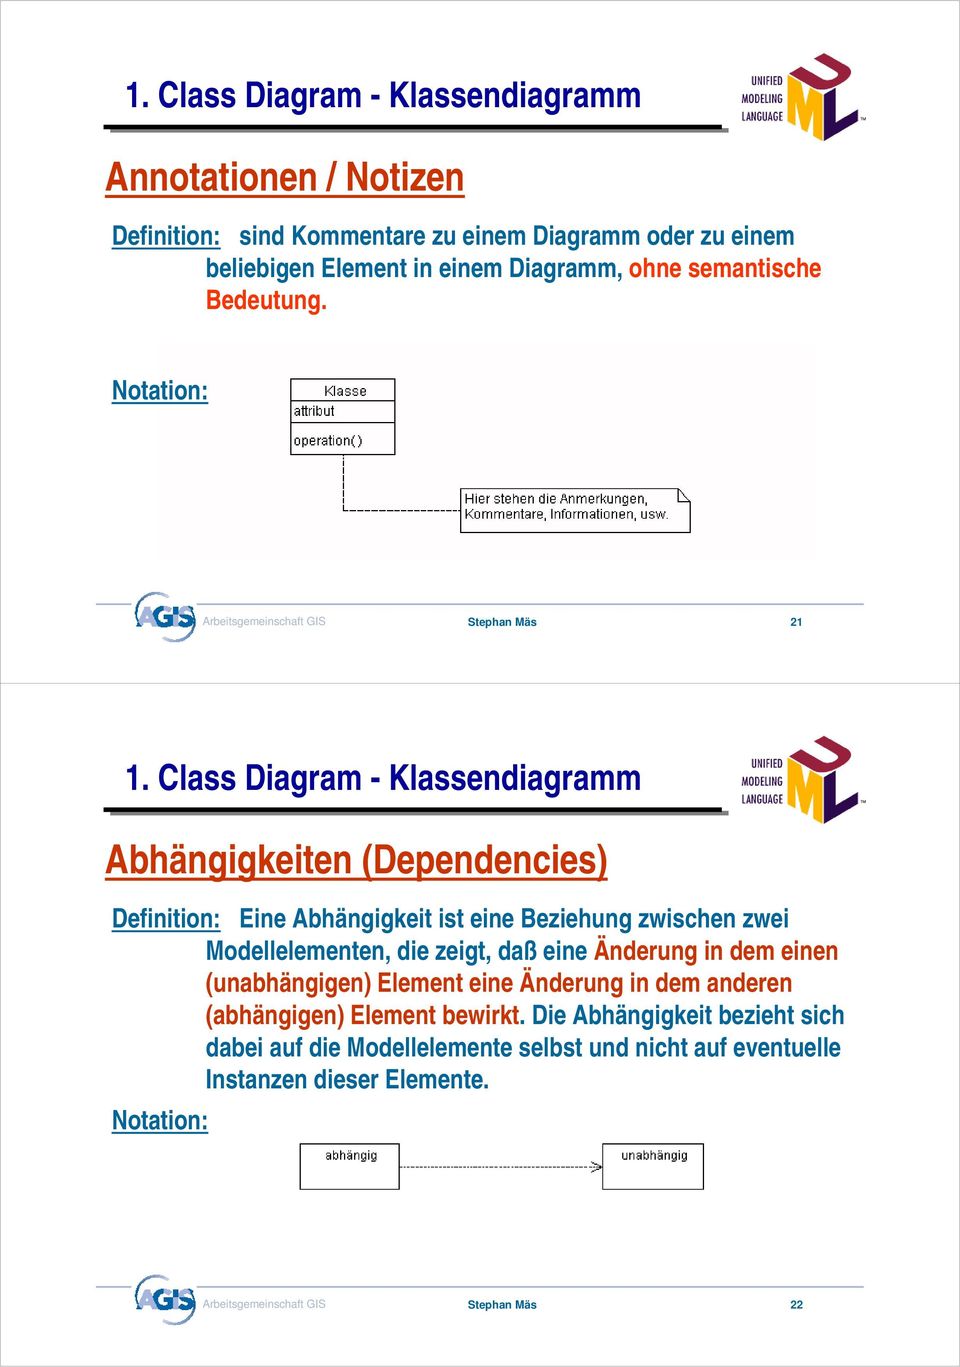 Class Diagram - Klassendiagramm Abhängigkeiten (Dependencies) Definition: Eine Abhängigkeit ist eine Beziehung zwischen zwei Modellelementen, die zeigt, daß eine